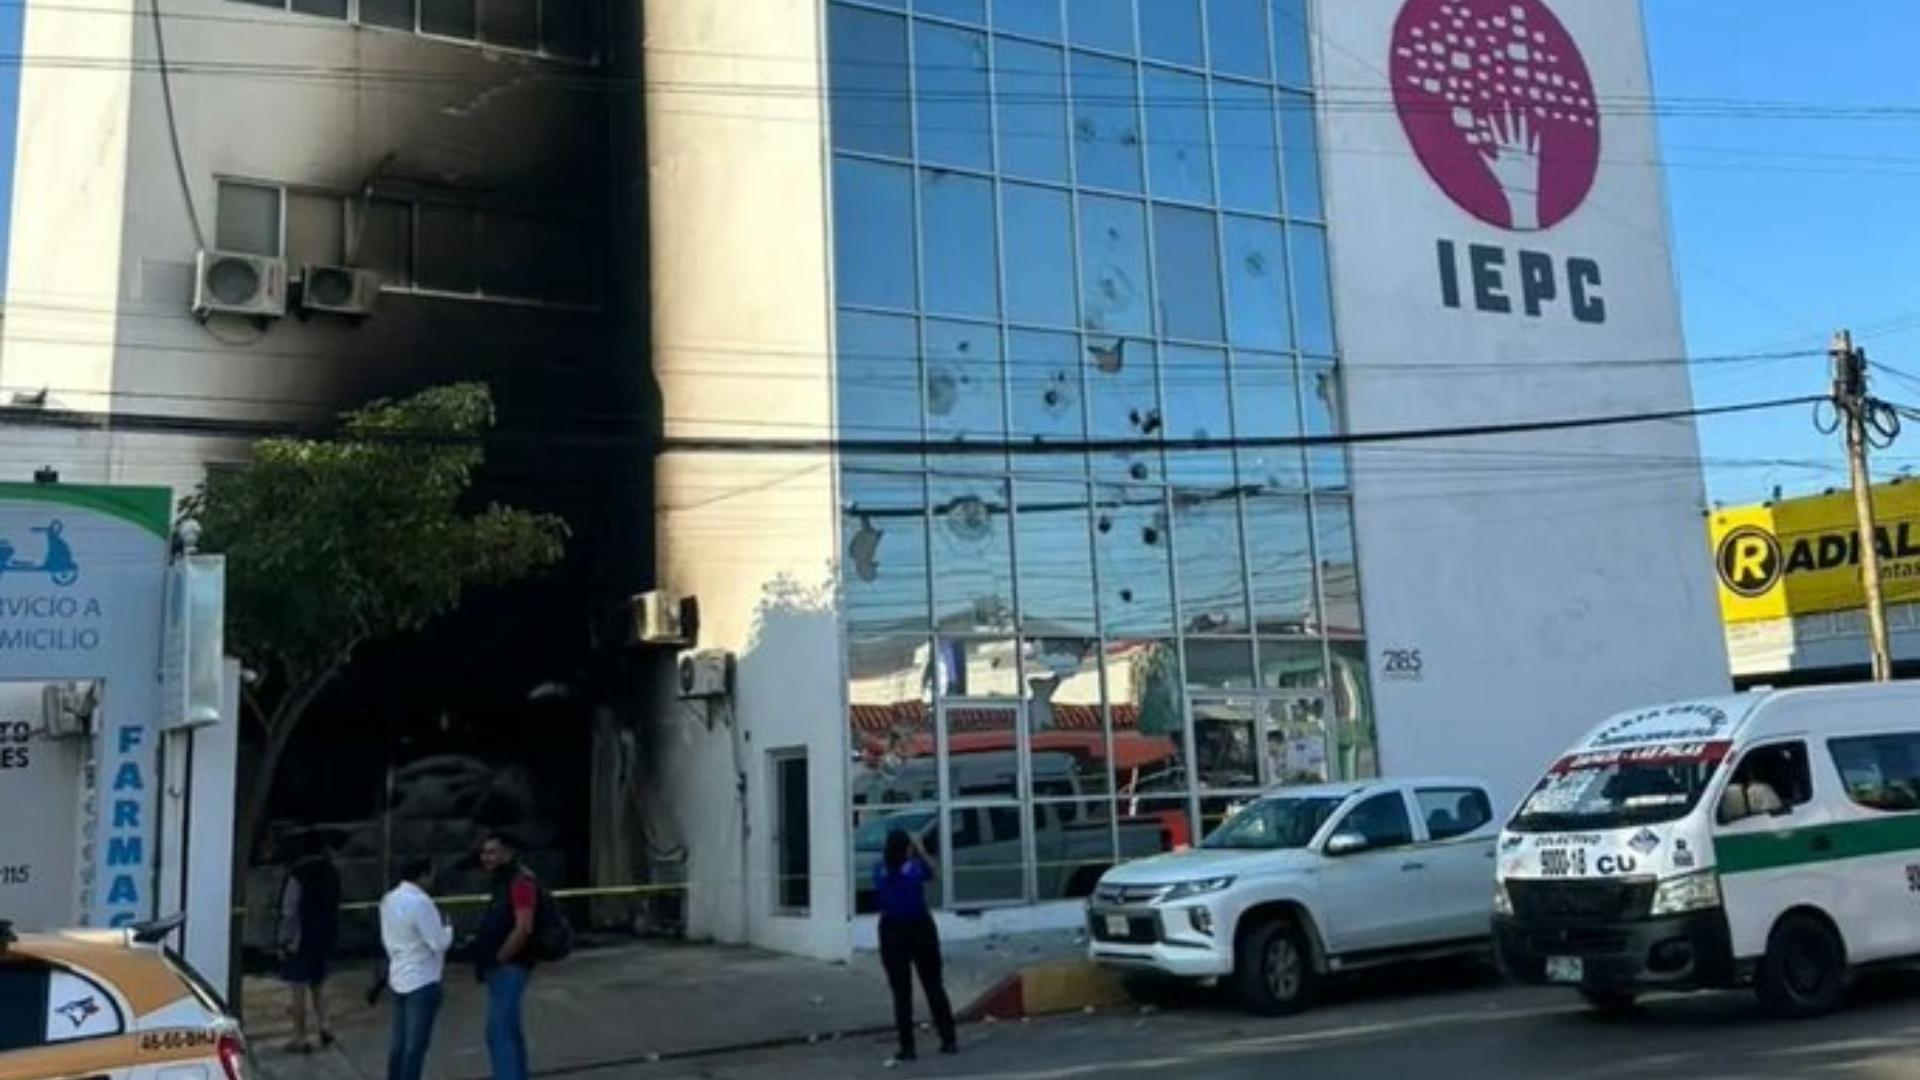 Normalistas Lanzan Bombas Molotov contra IEPC en Chiapas  